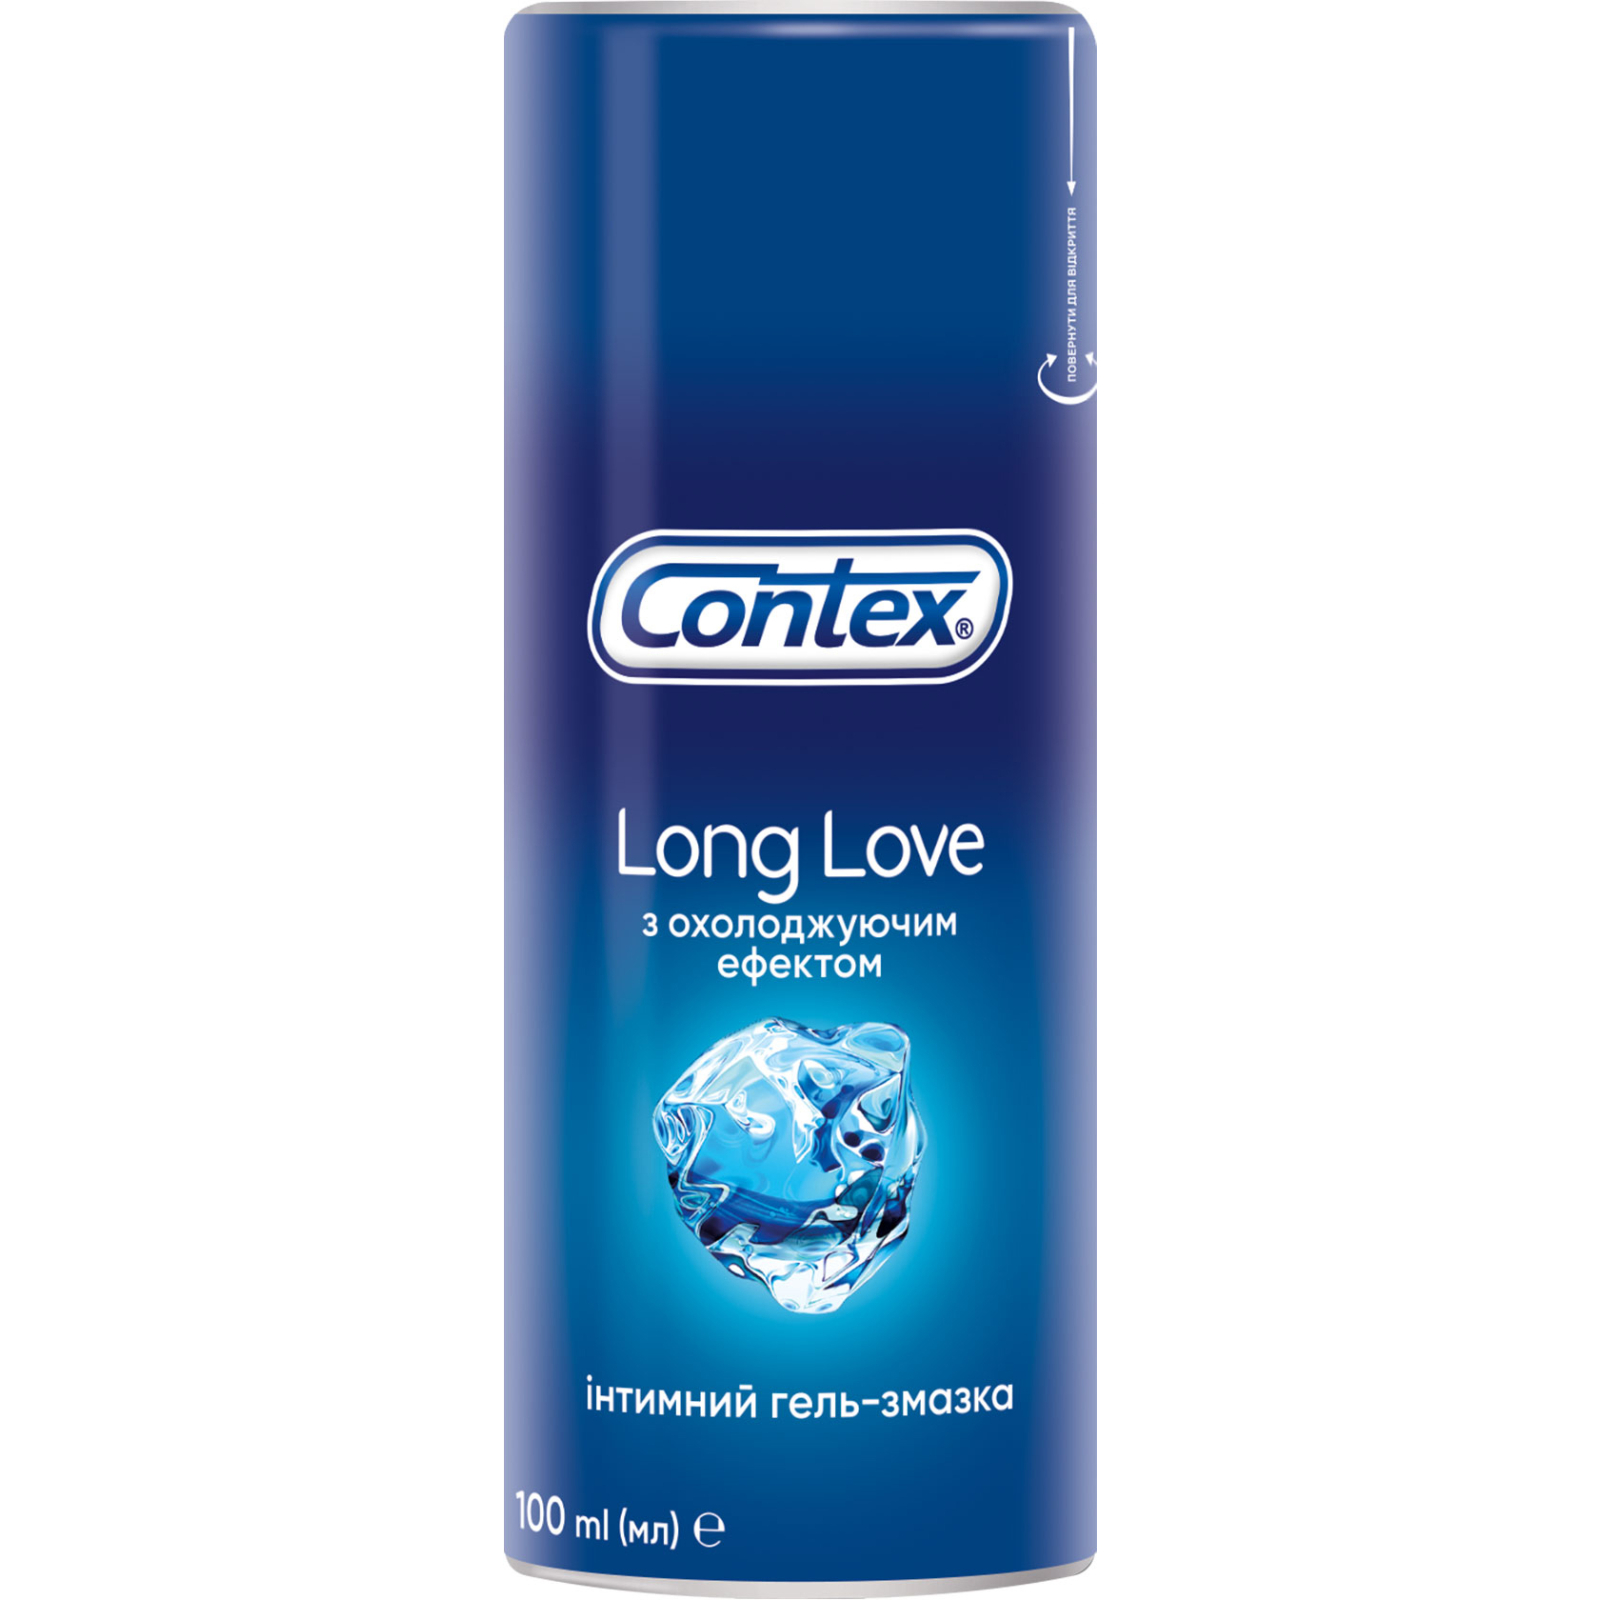 Интимный гель-смазка Contex Long Love с охлаждающим эффектом (лубрикант) 100 мл (4820108005136)